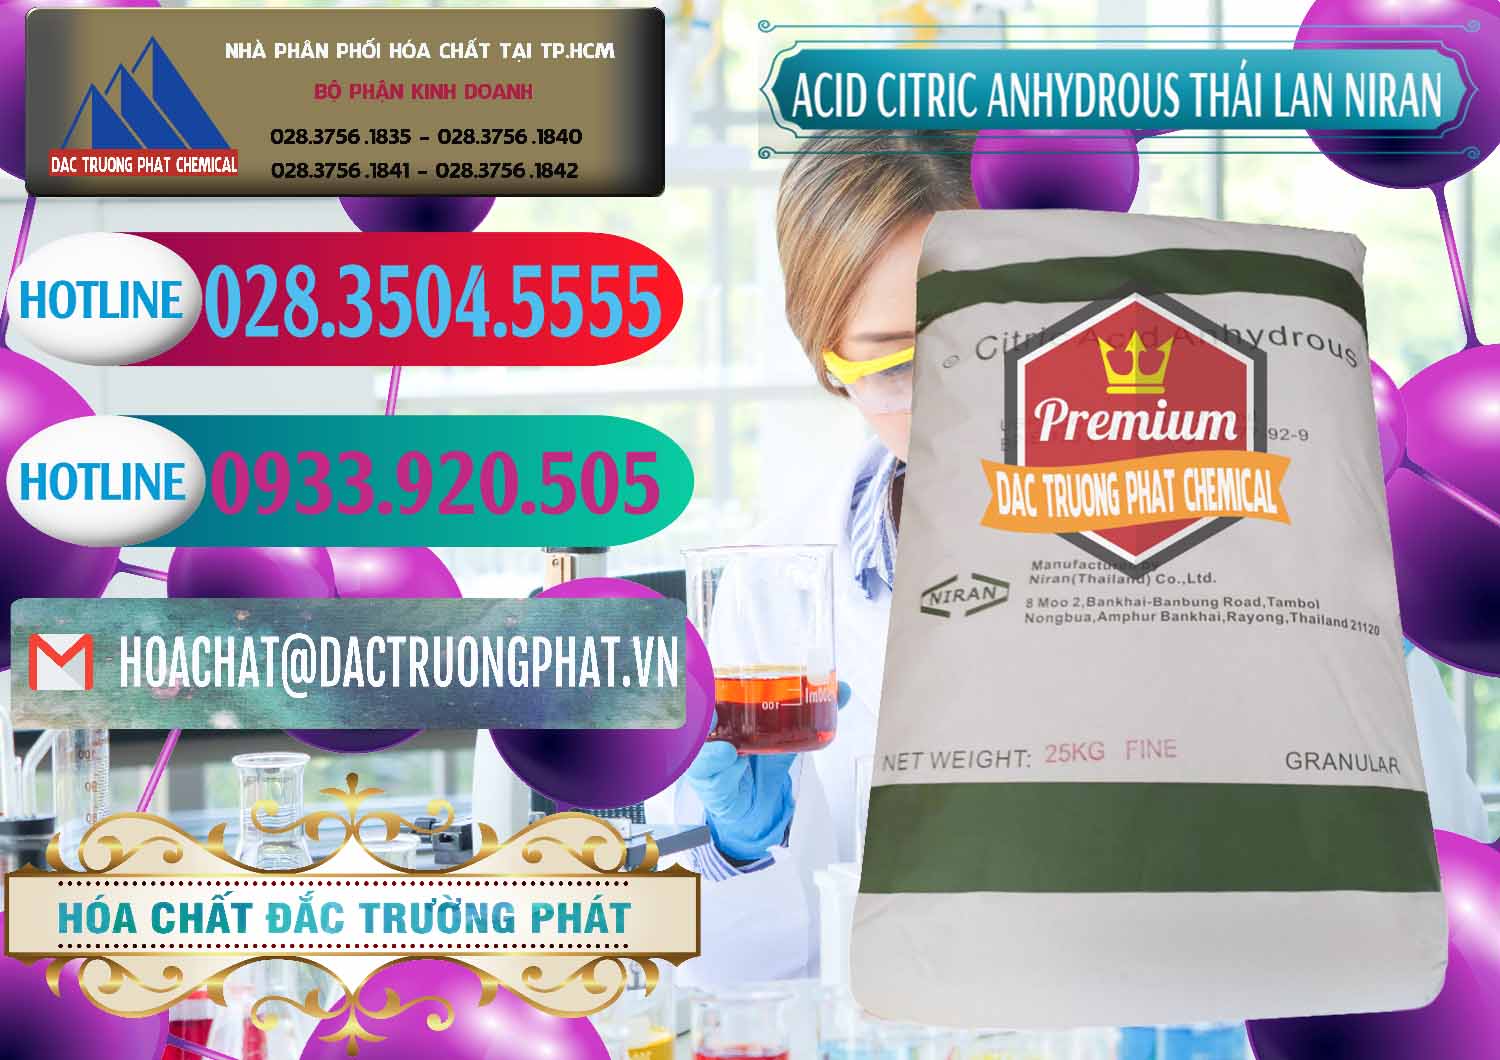 Công ty chuyên cung cấp ( bán ) Acid Citric - Axit Citric Anhydrous - Thái Lan Niran - 0231 - Cung cấp ( nhập khẩu ) hóa chất tại TP.HCM - truongphat.vn